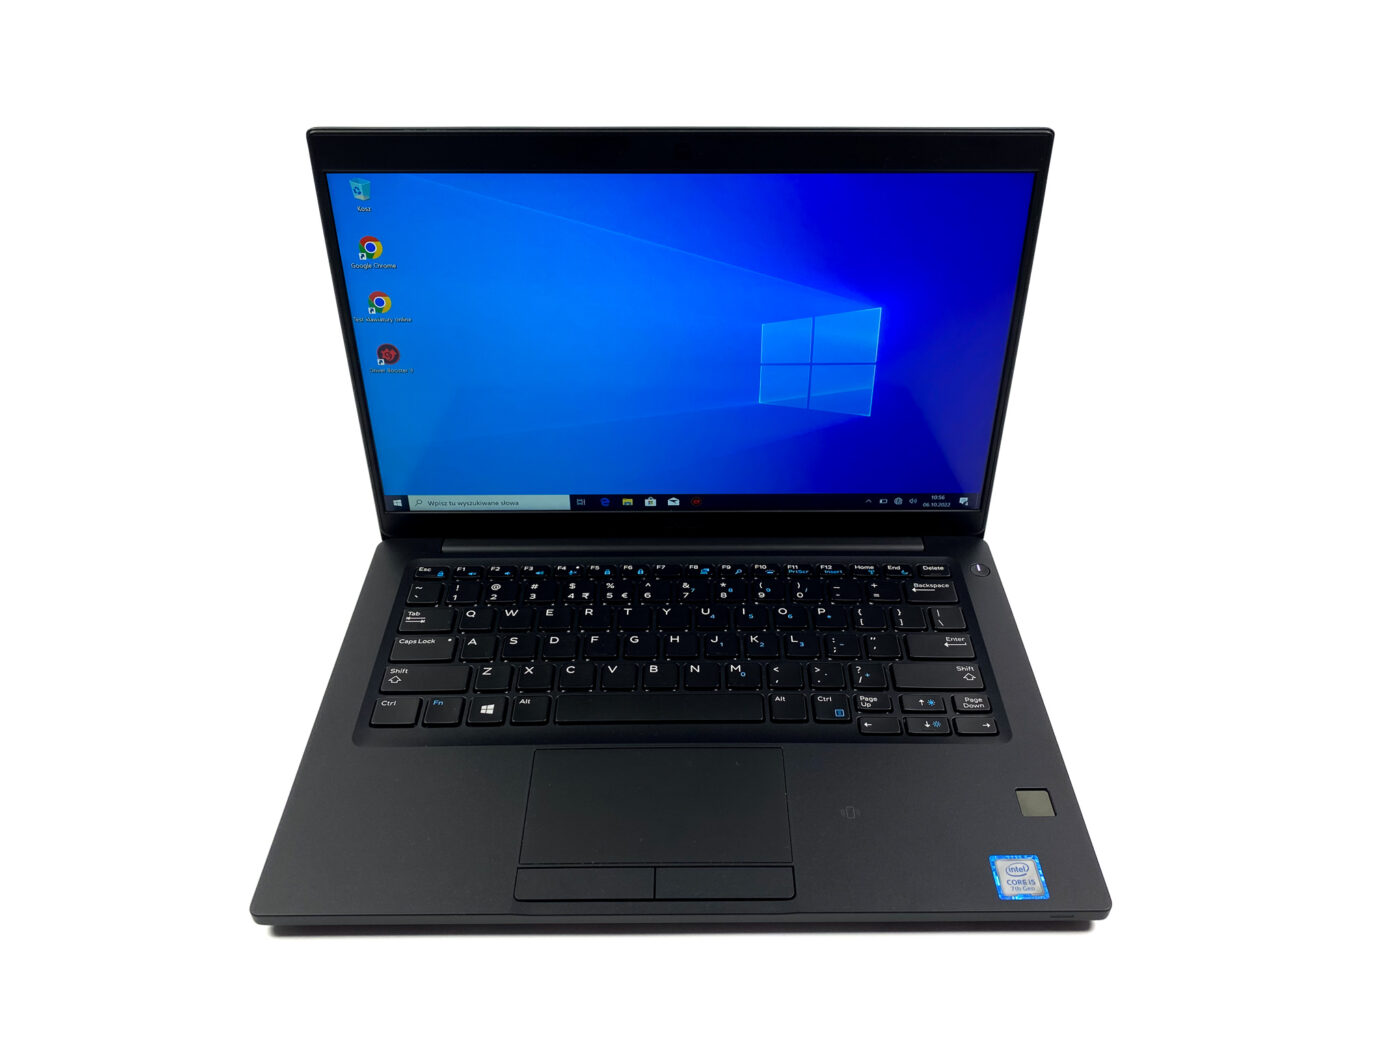 Dell Latitude 7390 - biznesowa perfekcja w kompaktowej formie! Jeśli szukasz biznesowego laptopa, który łączy w sobie wydajność, mobilność, bezpieczeństwo, komfort użytkowania i atrakcyjny design, to Dell Latitude 7390 jest idealnym wyborem dla Ciebie.